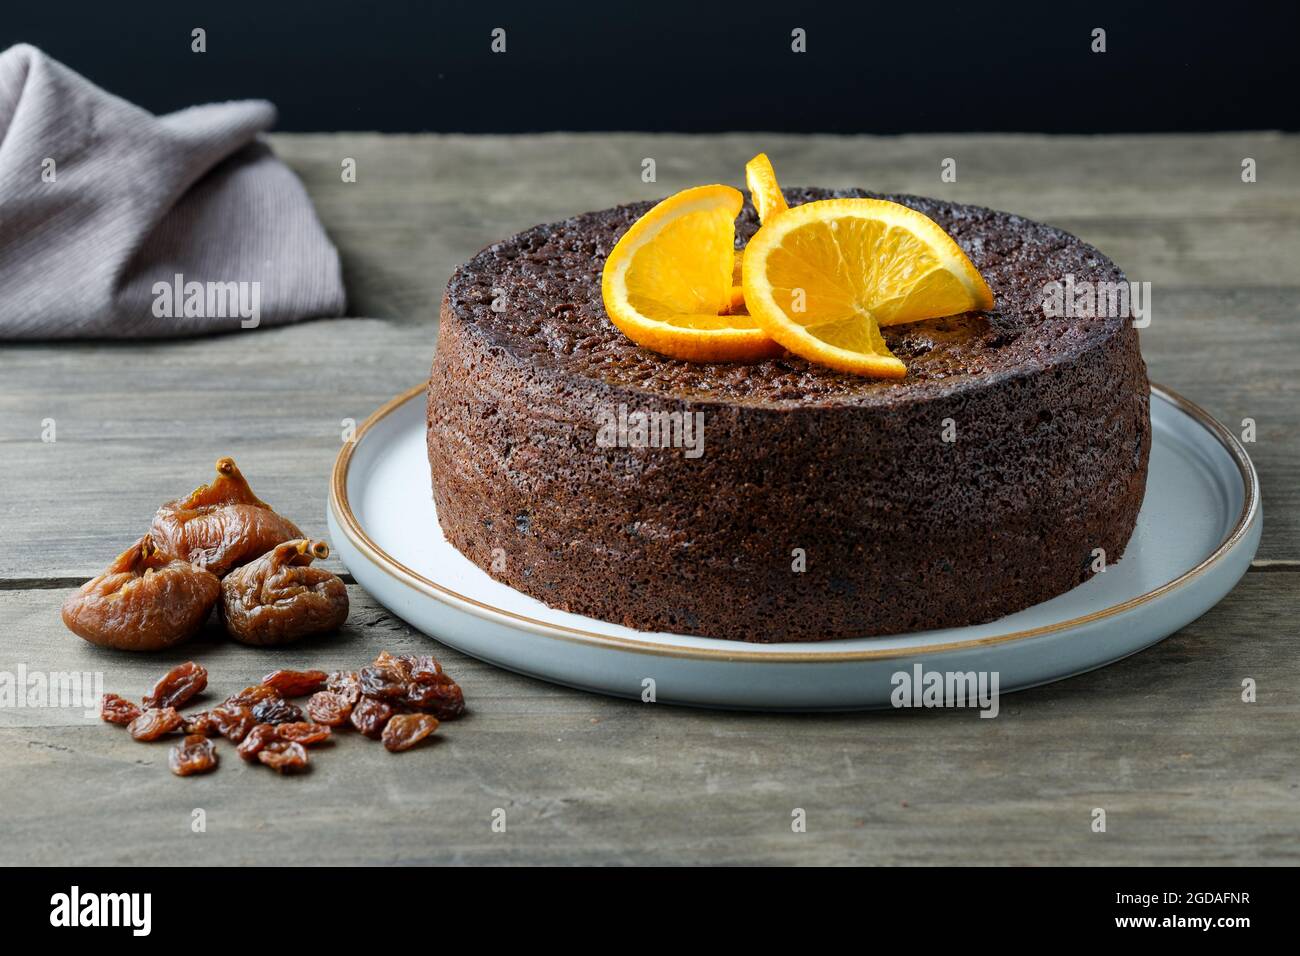 Un gâteau maison à l'orange, au chocolat et aux fruits fait à l'aide d'une recette de Nigella Lawson. Le gâteau humide est décoré de tranches d'orange frais Banque D'Images